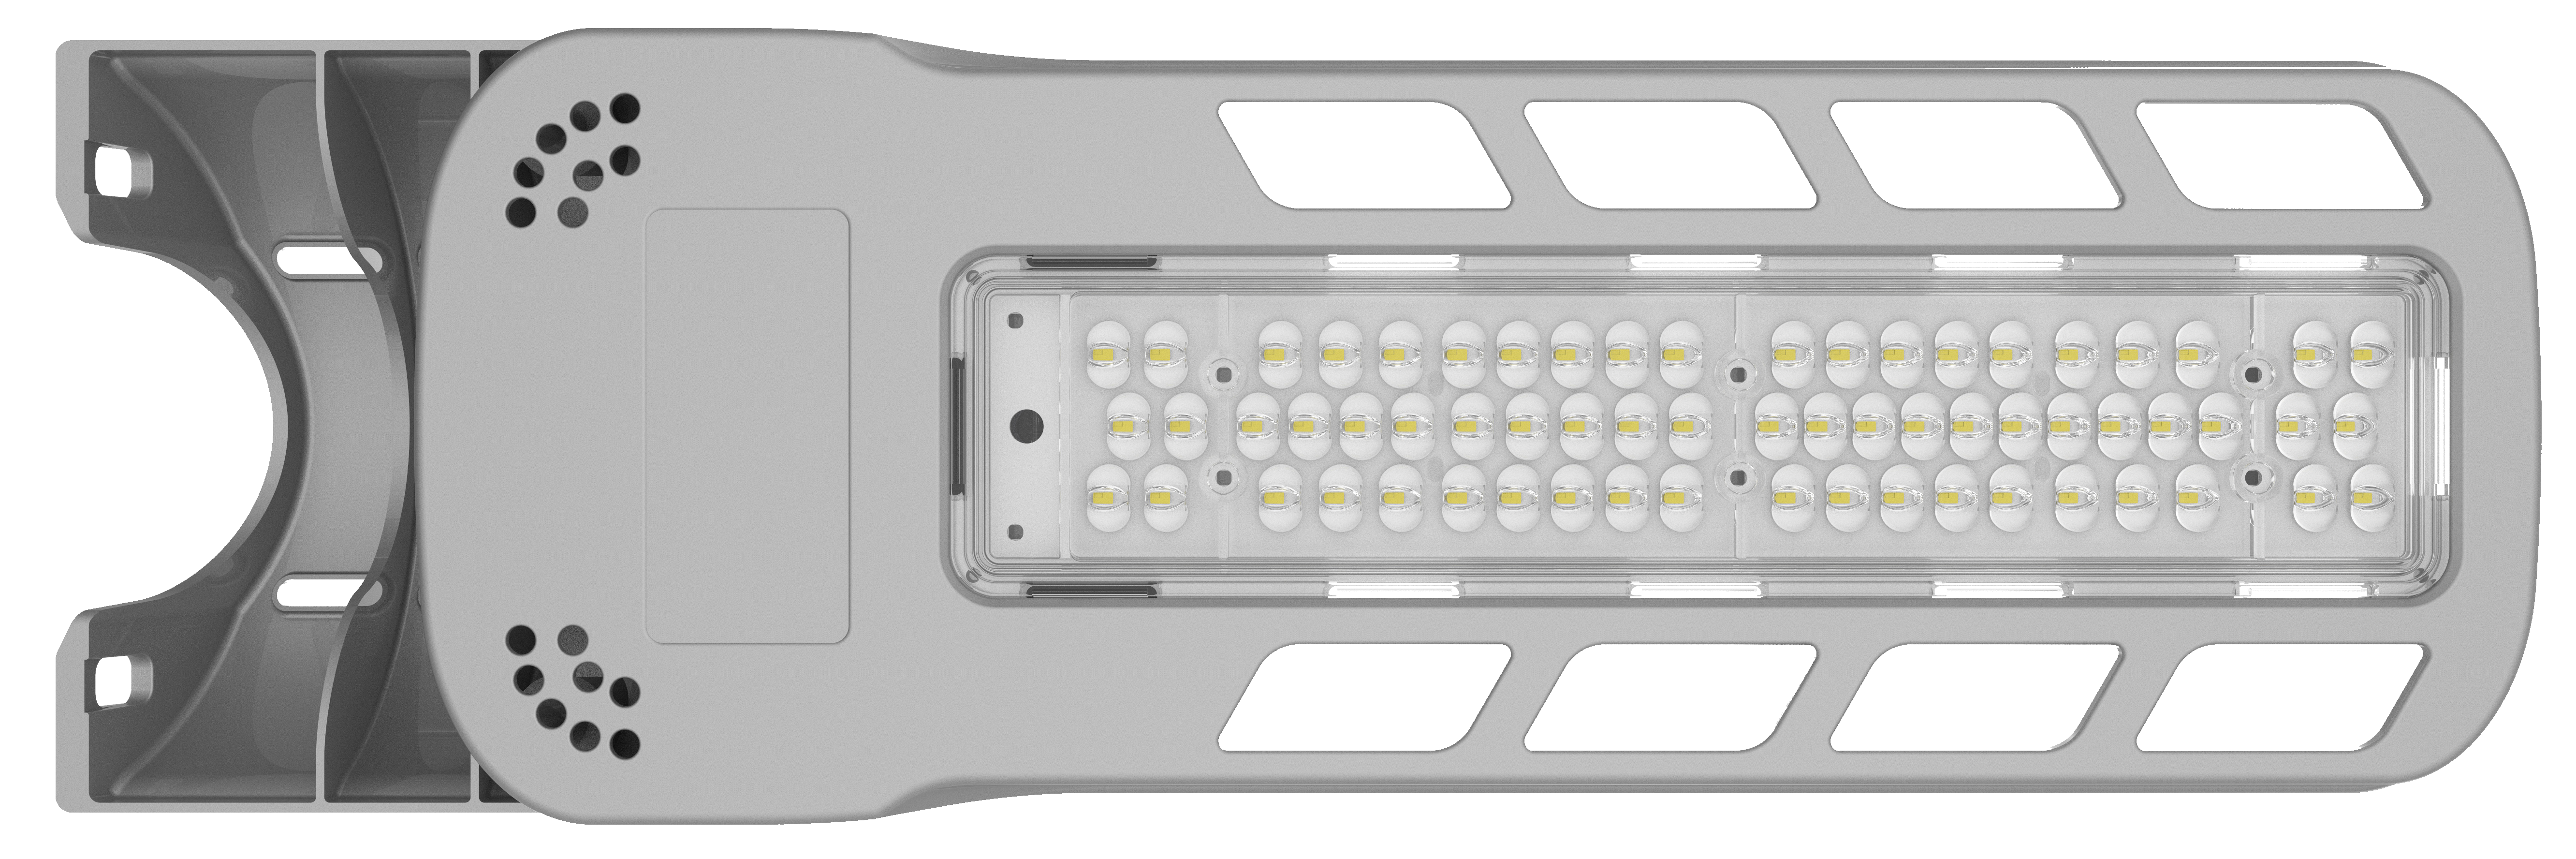 Réverbère LED de type outre-mer série RK 